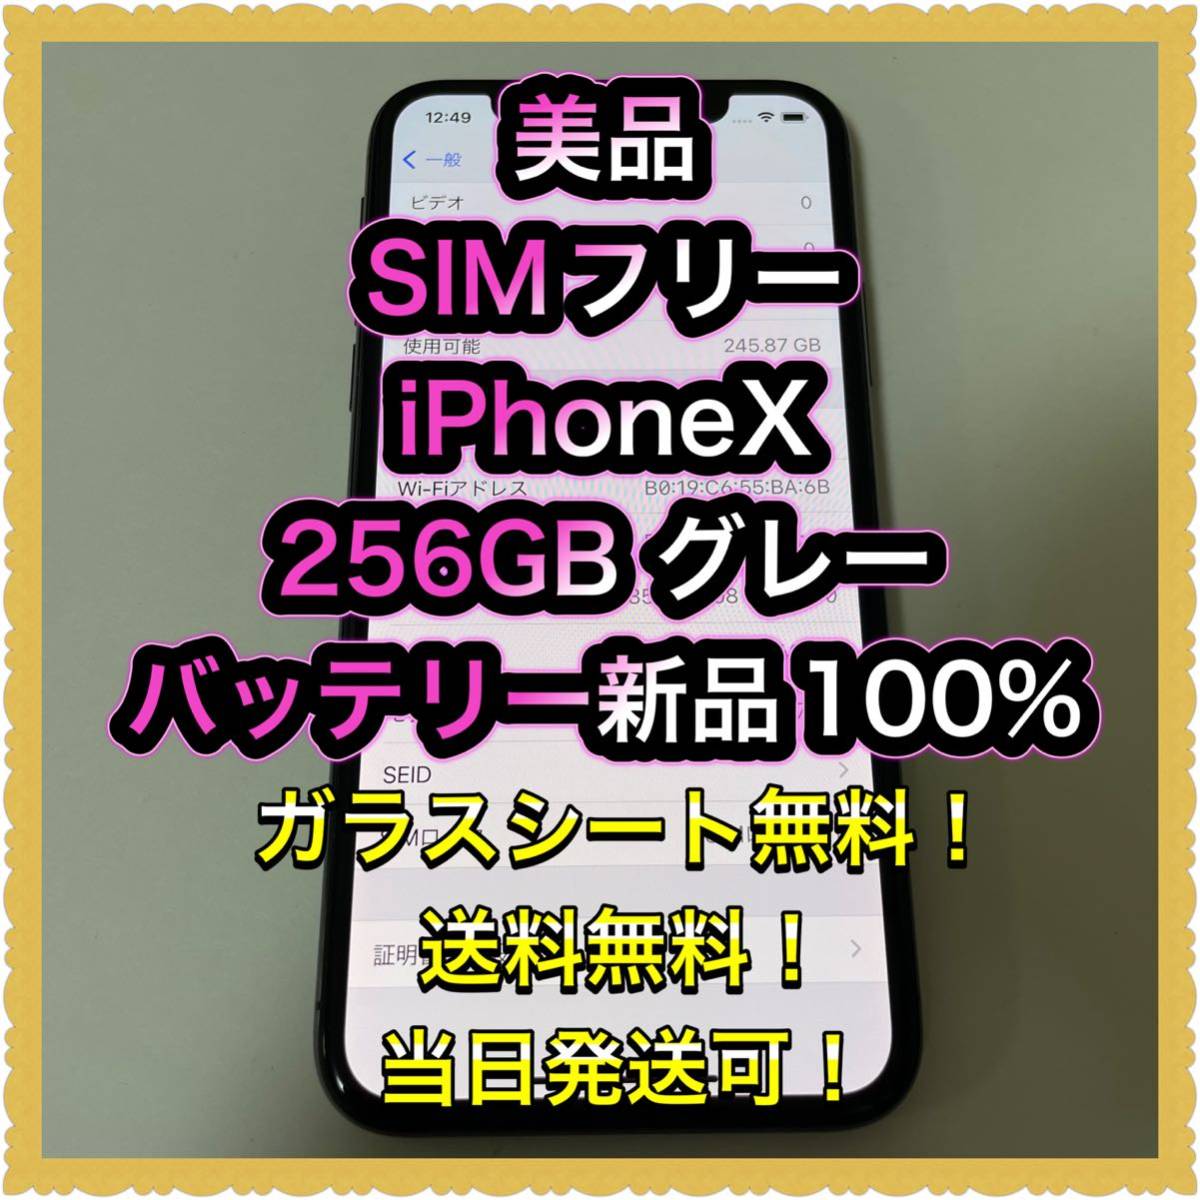 美品SIMフリーiPhoneX 256GB グレー判定◯ 残債なしバッテリー新品 日本代购,买对网